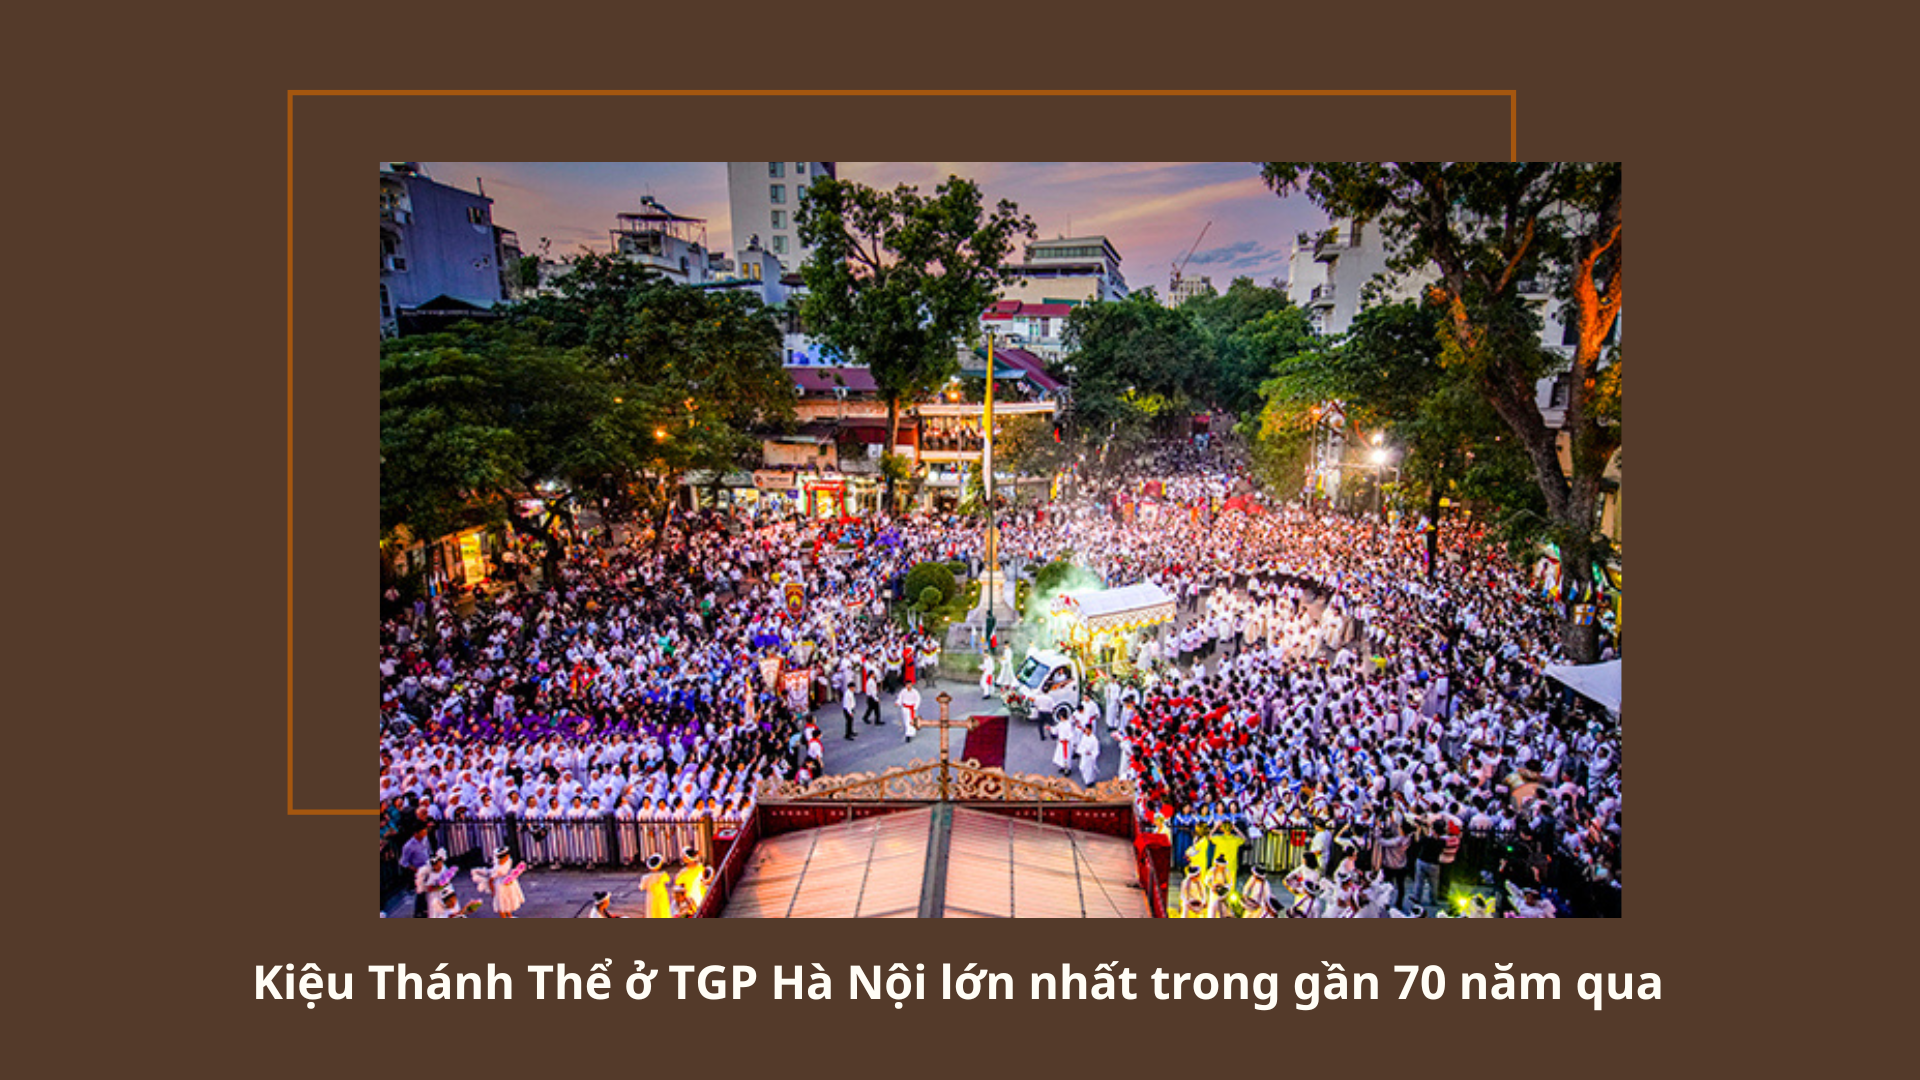 Kiệu Thánh Thể ở TGP Hà Nội lớn nhất trong gần 70 năm qua